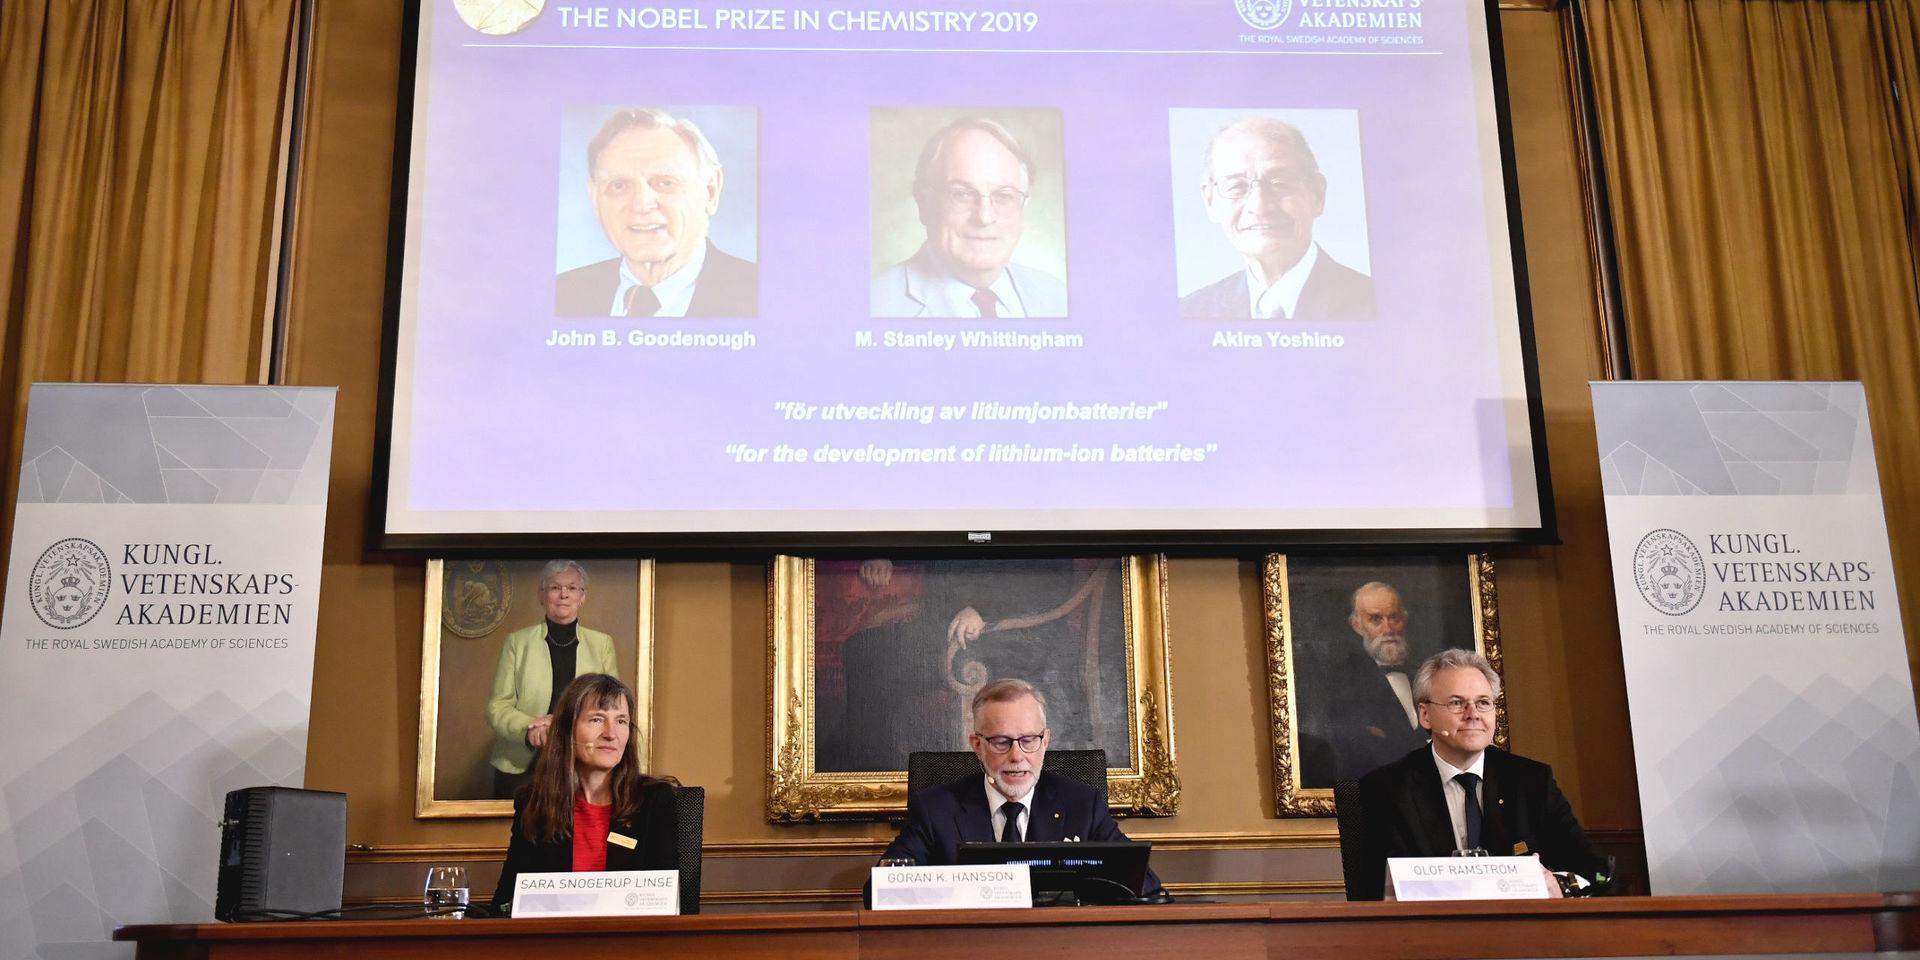 Sara Snogerup Linse, Göran K Hansson, ständig sekreterare för Vetenskapsakademien och Olof Ramström presenterar årets Nobelpristagare i kemi under en pressträff på Kungliga vetenskapsakademien.